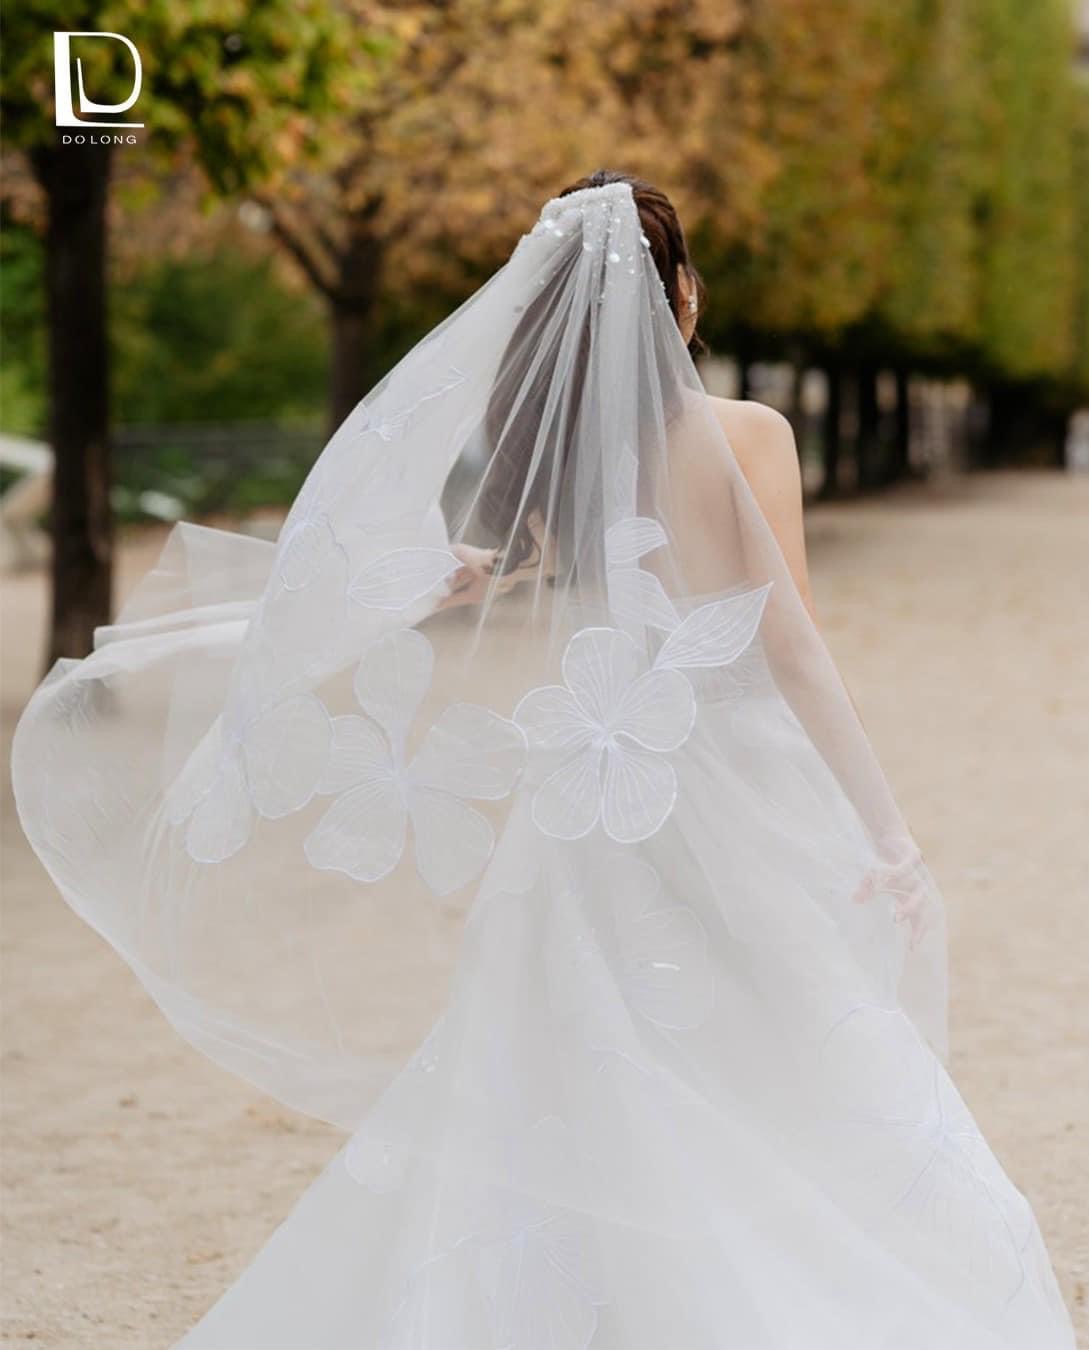 Váy cưới tinh giản là một trong những phân khúc váy cưới chưa khi nào lỗi thời. Thiết kế hướng tới sự giản dị nhưng đẹp kiêu sa, phù hợp cho những cô nàng mê sự tối giản.